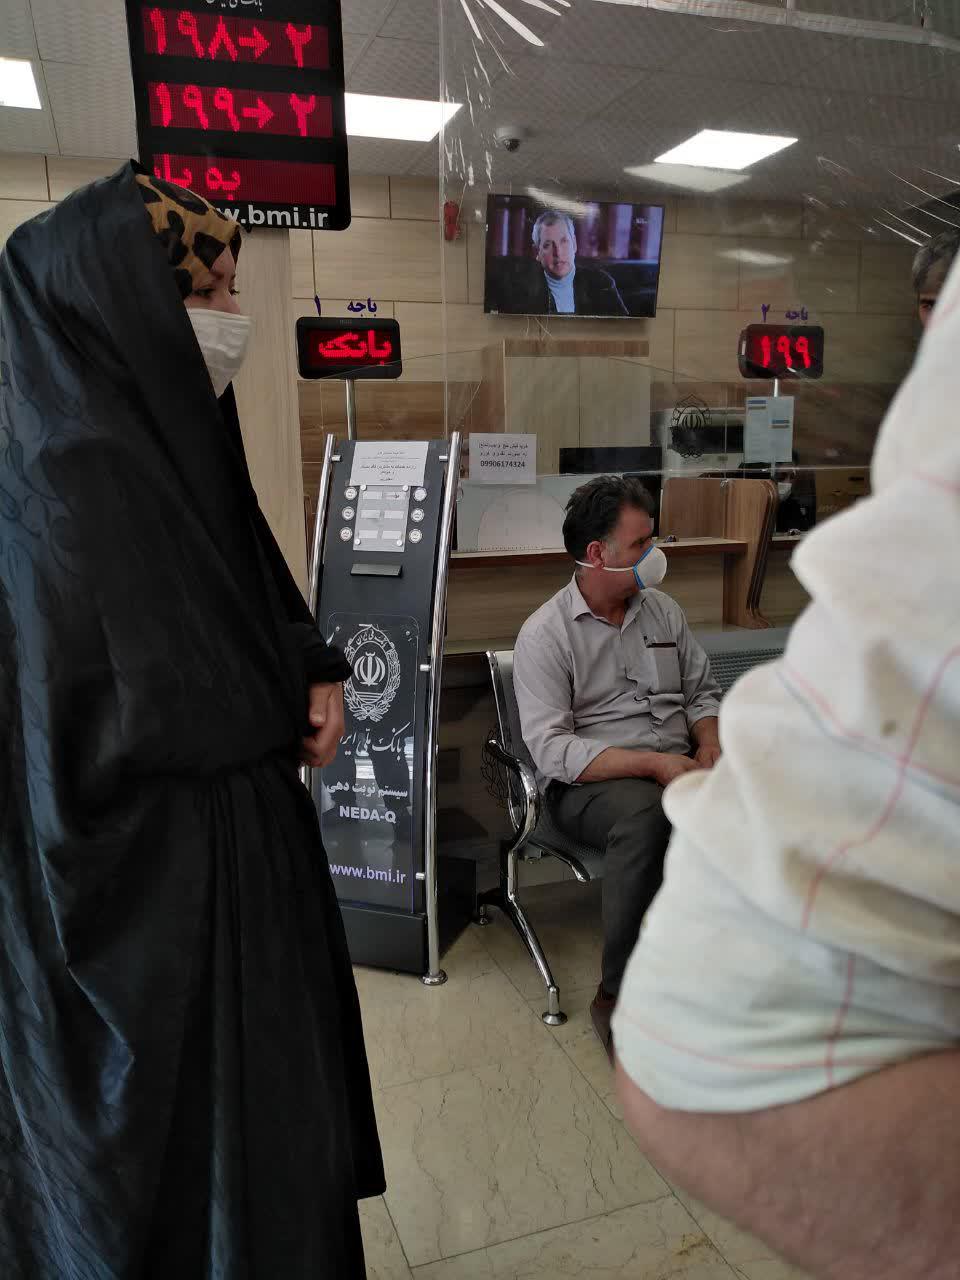 تبلیغ فروش فیش حج در یکی از بانک های نجف آباد+تصاویر